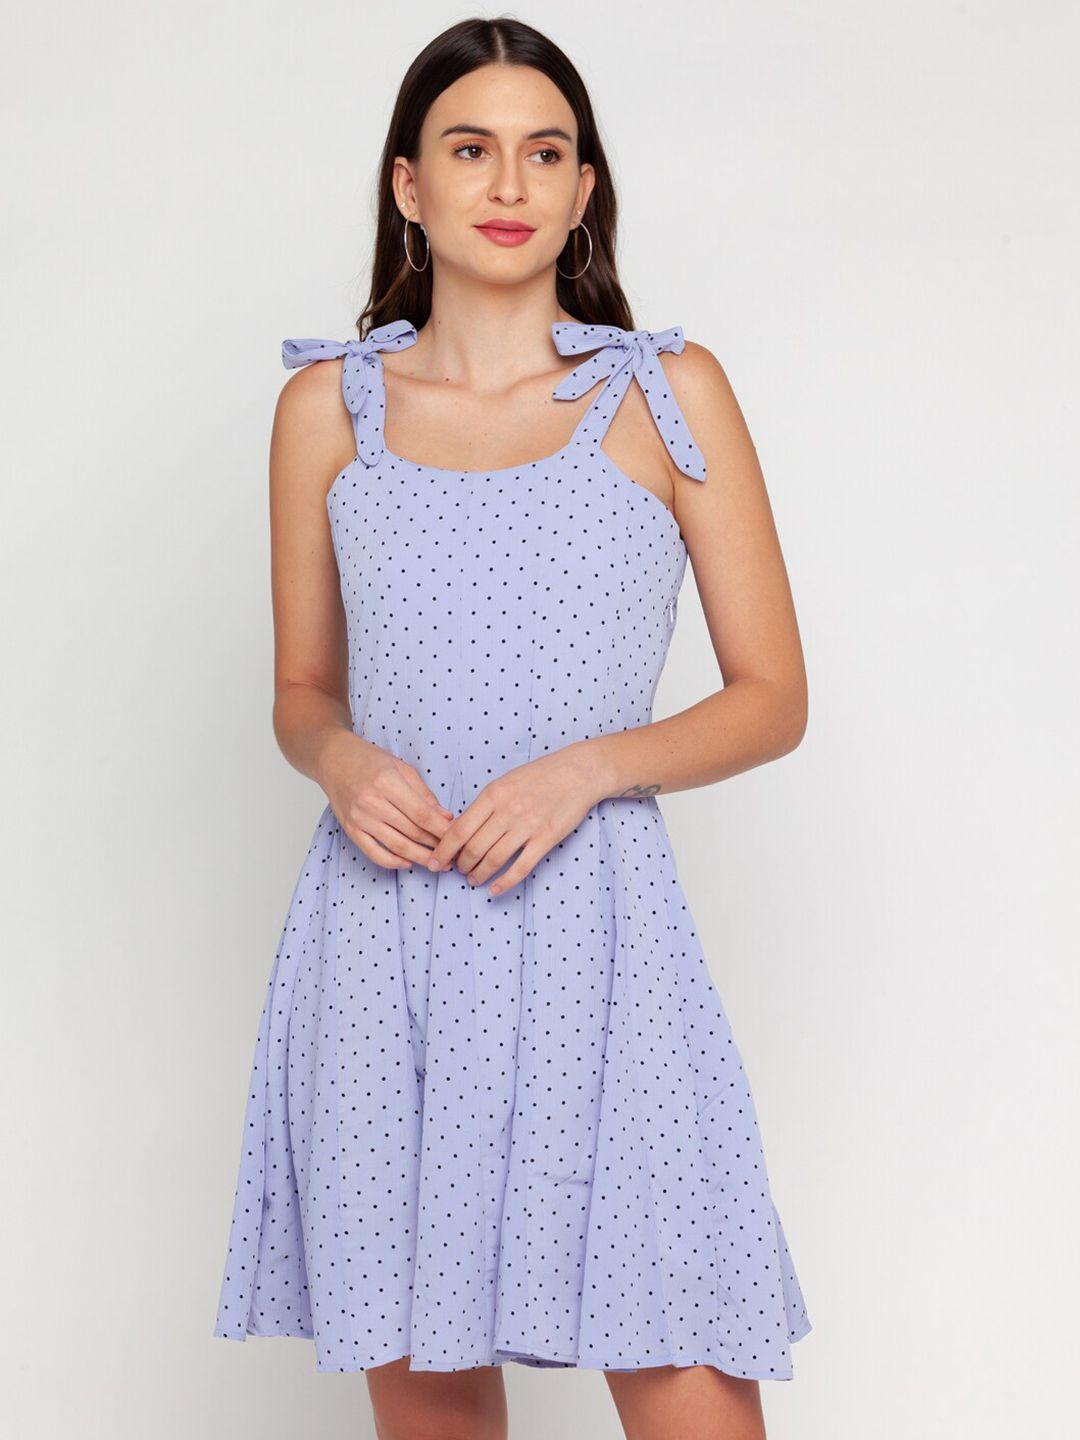 zink london blue polka dots print fit & flare dress